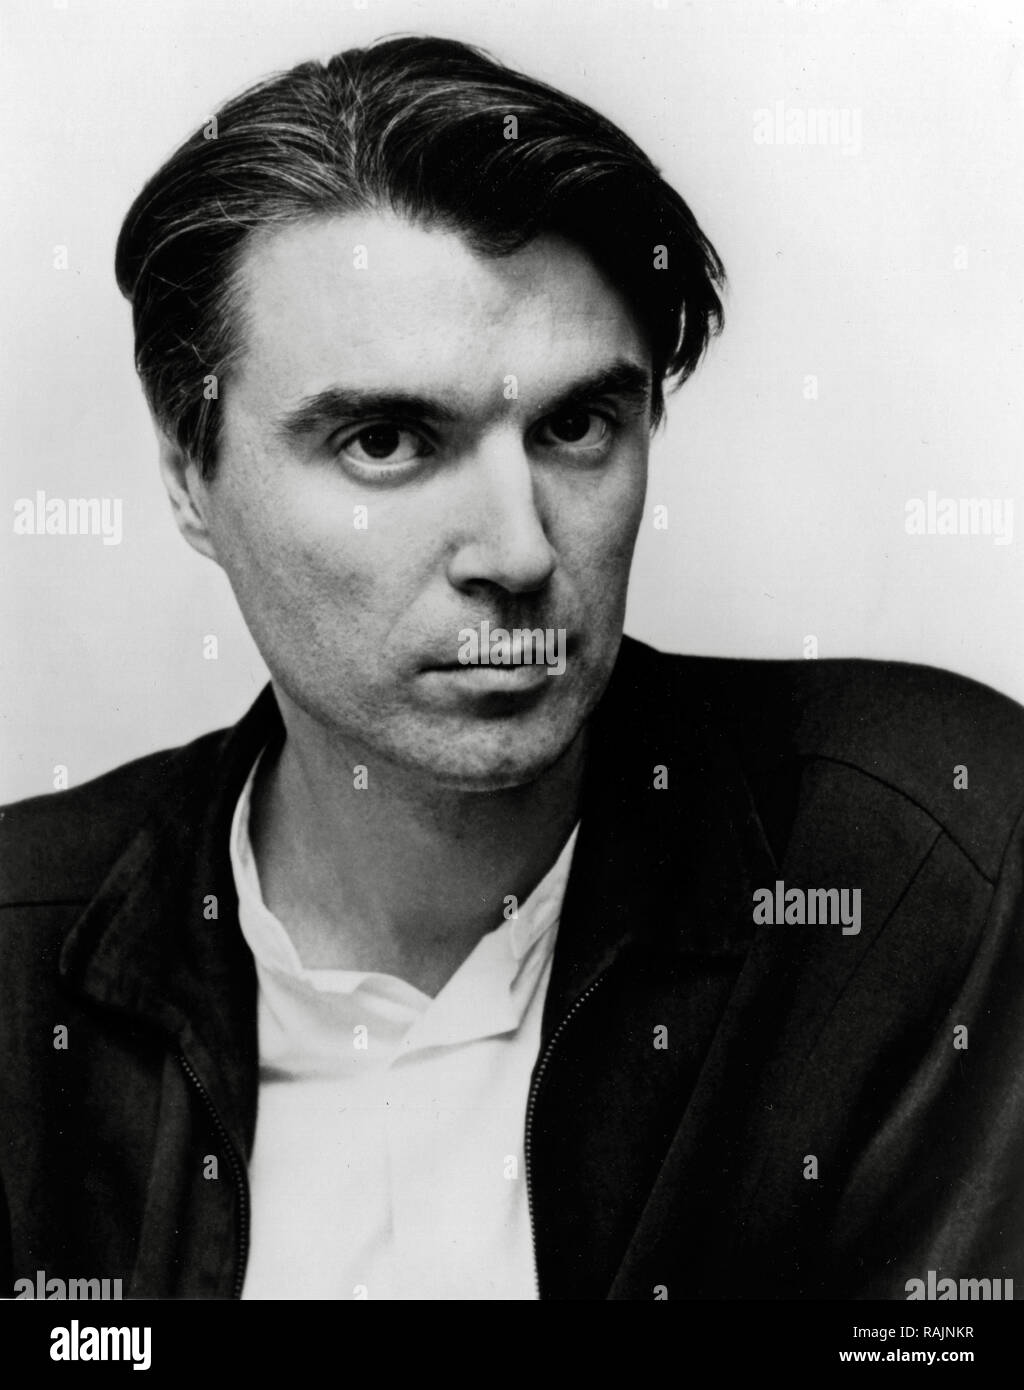 Werbung Foto von David Byrne (Talking Heads), ca. 1988 Datei Referenz # 33636 914 THA Stockfoto